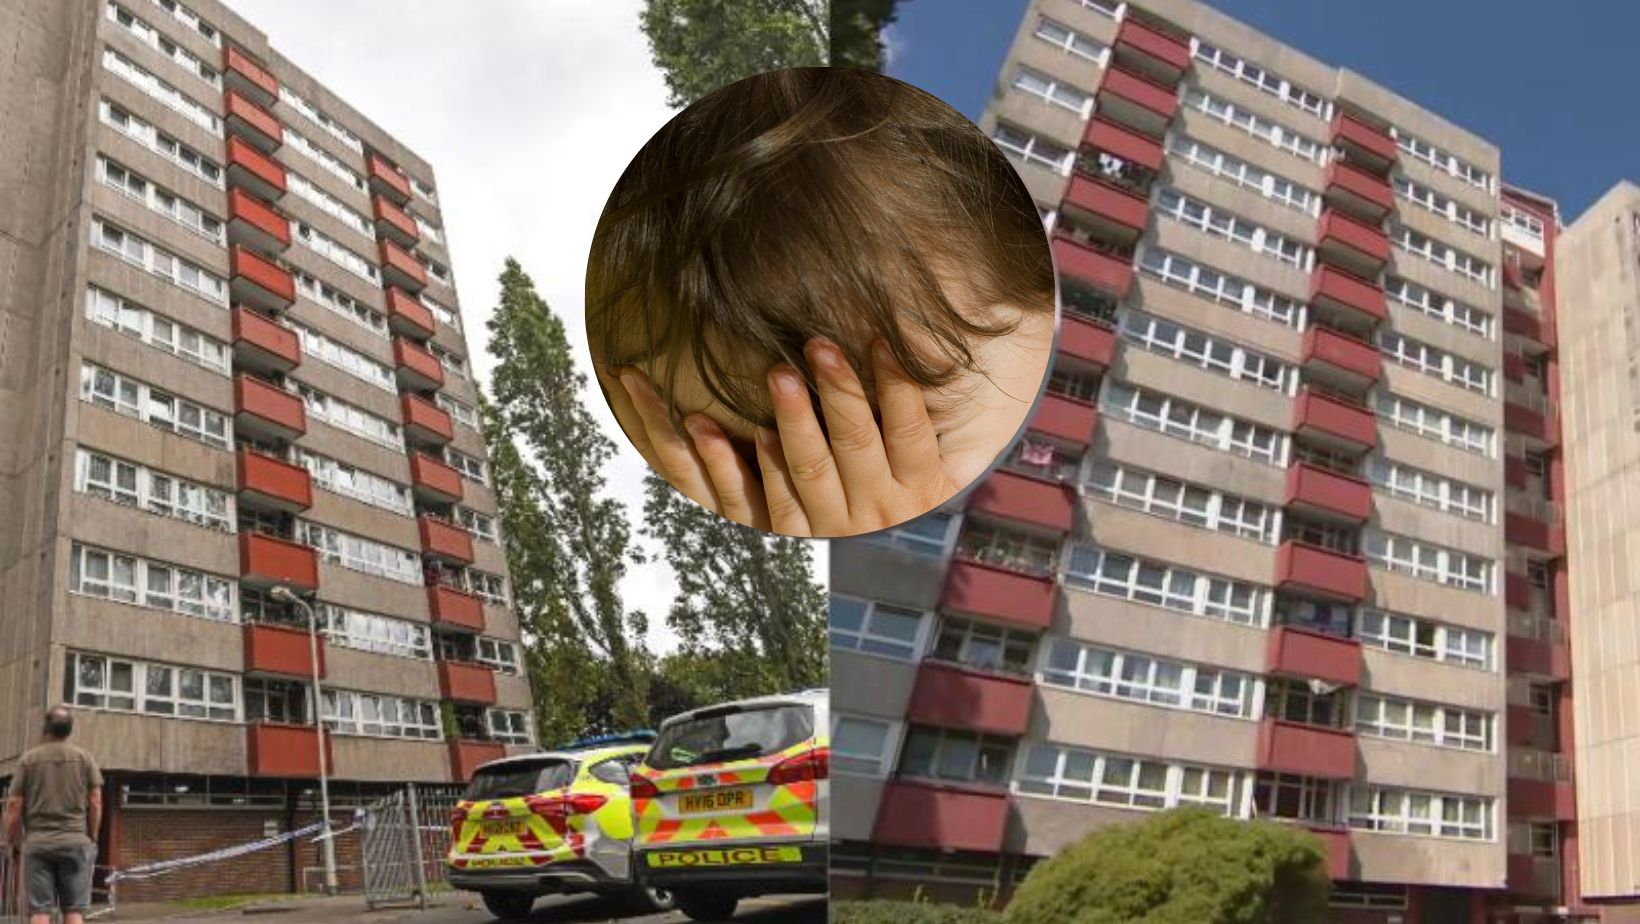 Niña de 8 años murió al caer desde un balcón en Inglaterra; hay consternación